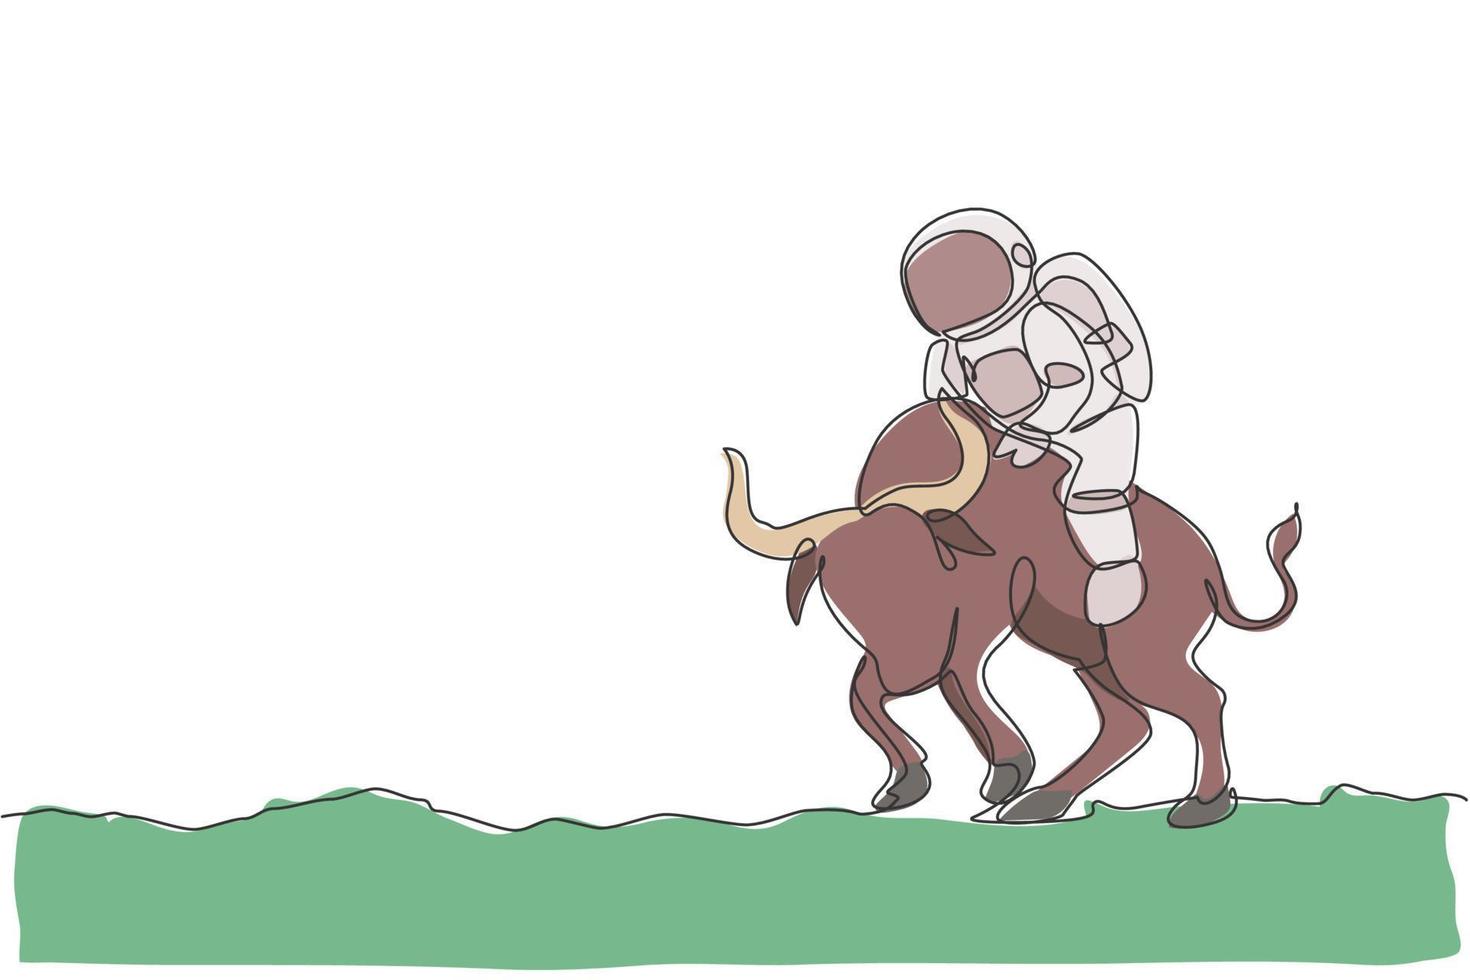 un disegno a tratteggio continuo dell'astronauta fare una passeggiata a cavallo di un toro arrabbiato, animale selvatico sulla superficie lunare. concetto di viaggio safari nello spazio profondo. illustrazione vettoriale di disegno grafico di disegno grafico a linea singola dinamica